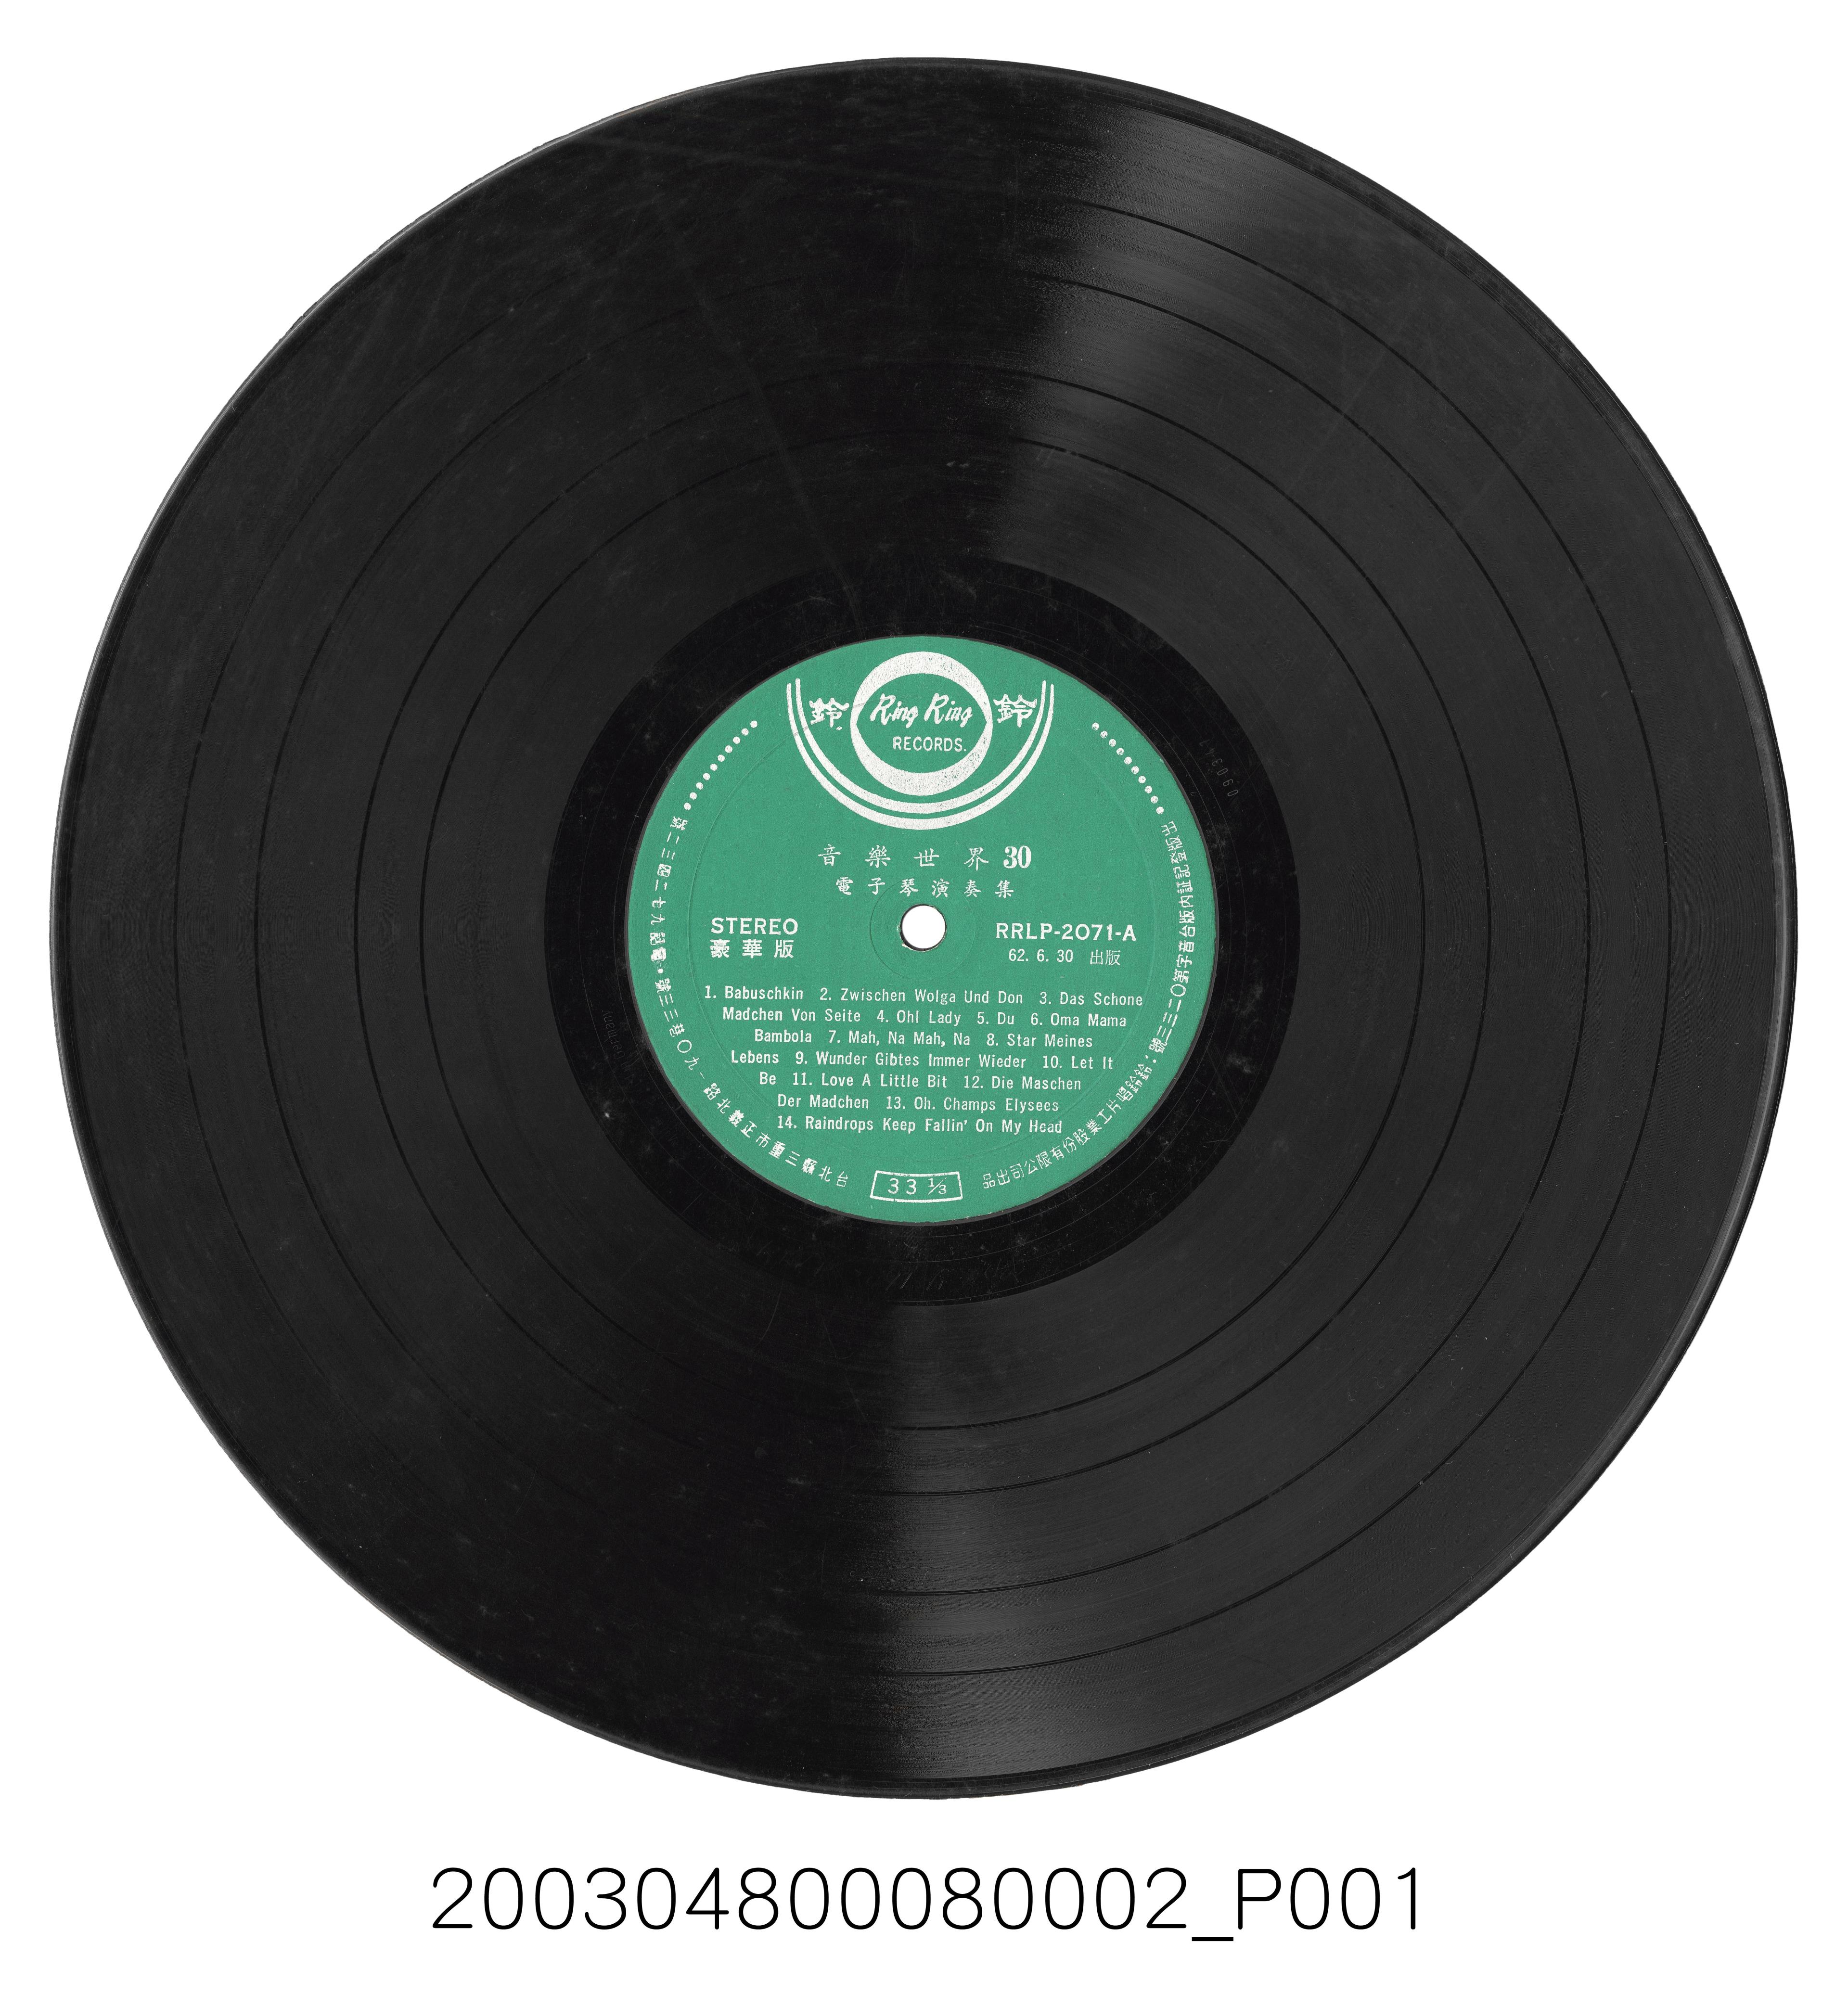 鈴鈴唱片公司發行豪華版唱片編號「RRLP-2071」演奏專輯《音樂世界30：電子琴演奏集》12吋塑膠唱片 (共2張)